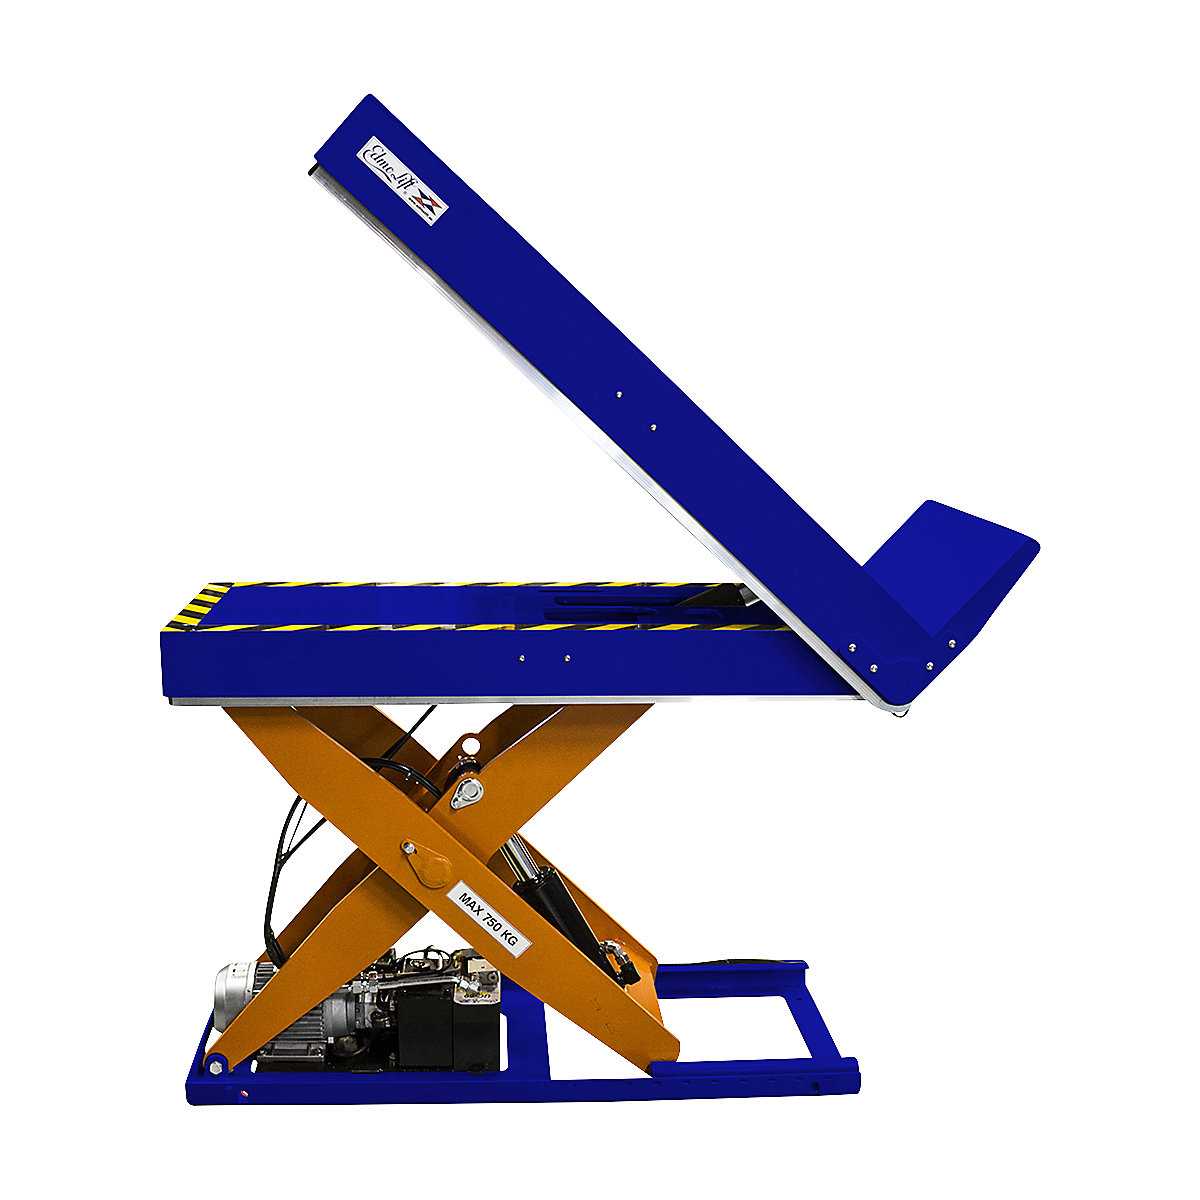 LTT 750 lift and tilt table – Edmolift, platform LxW 1200 x 550 mm, max. load 750 kg